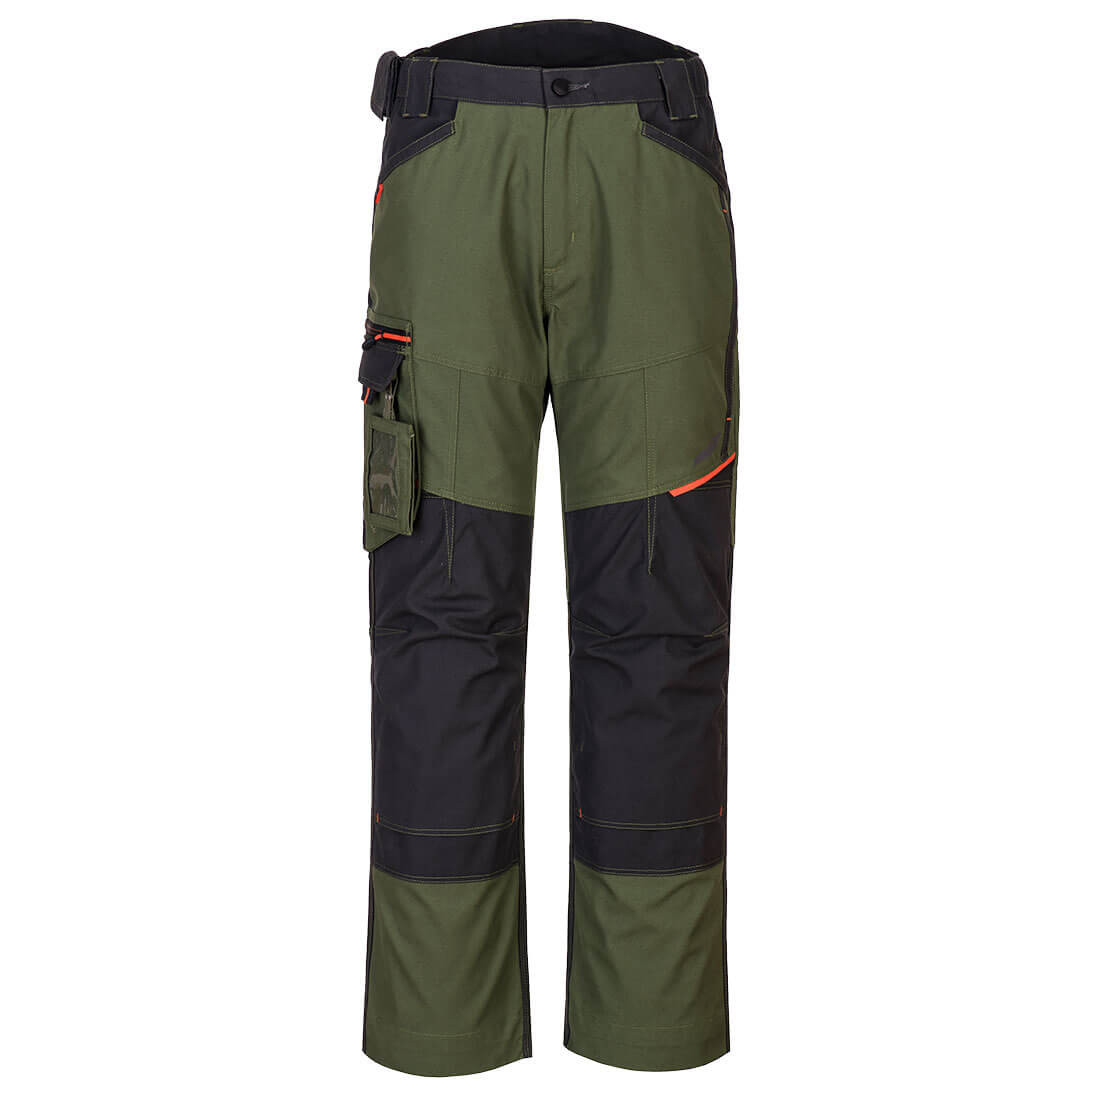 Pantalon WX3 - Les vêtements de protection